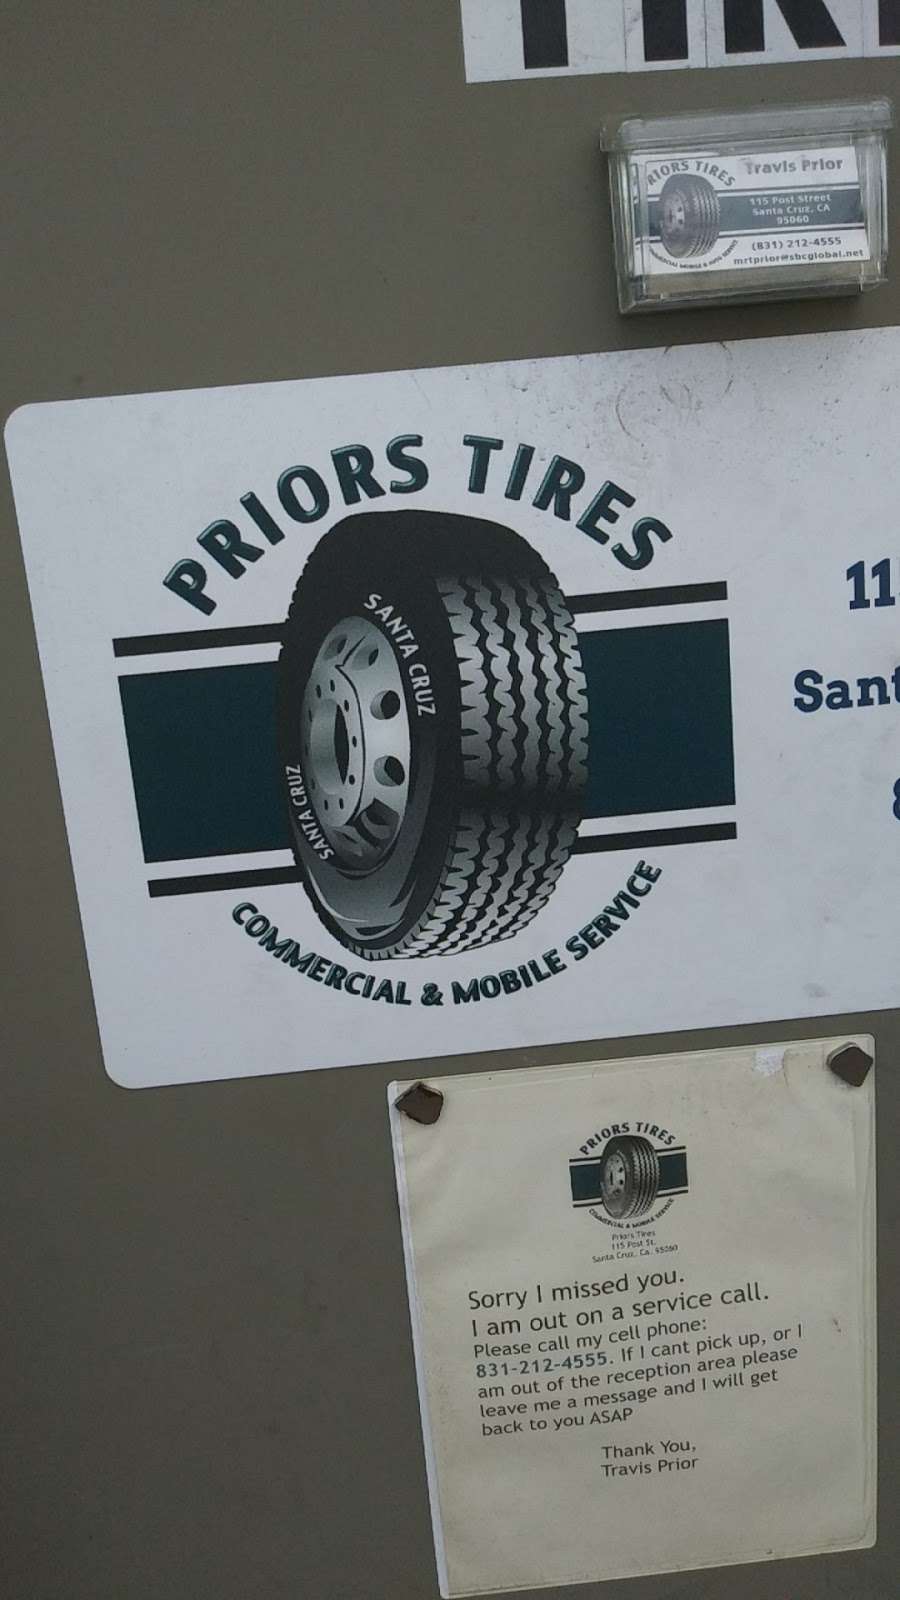 Priors Tires | 115 Post St, Santa Cruz, CA 95060 | Phone: (831) 212-4555